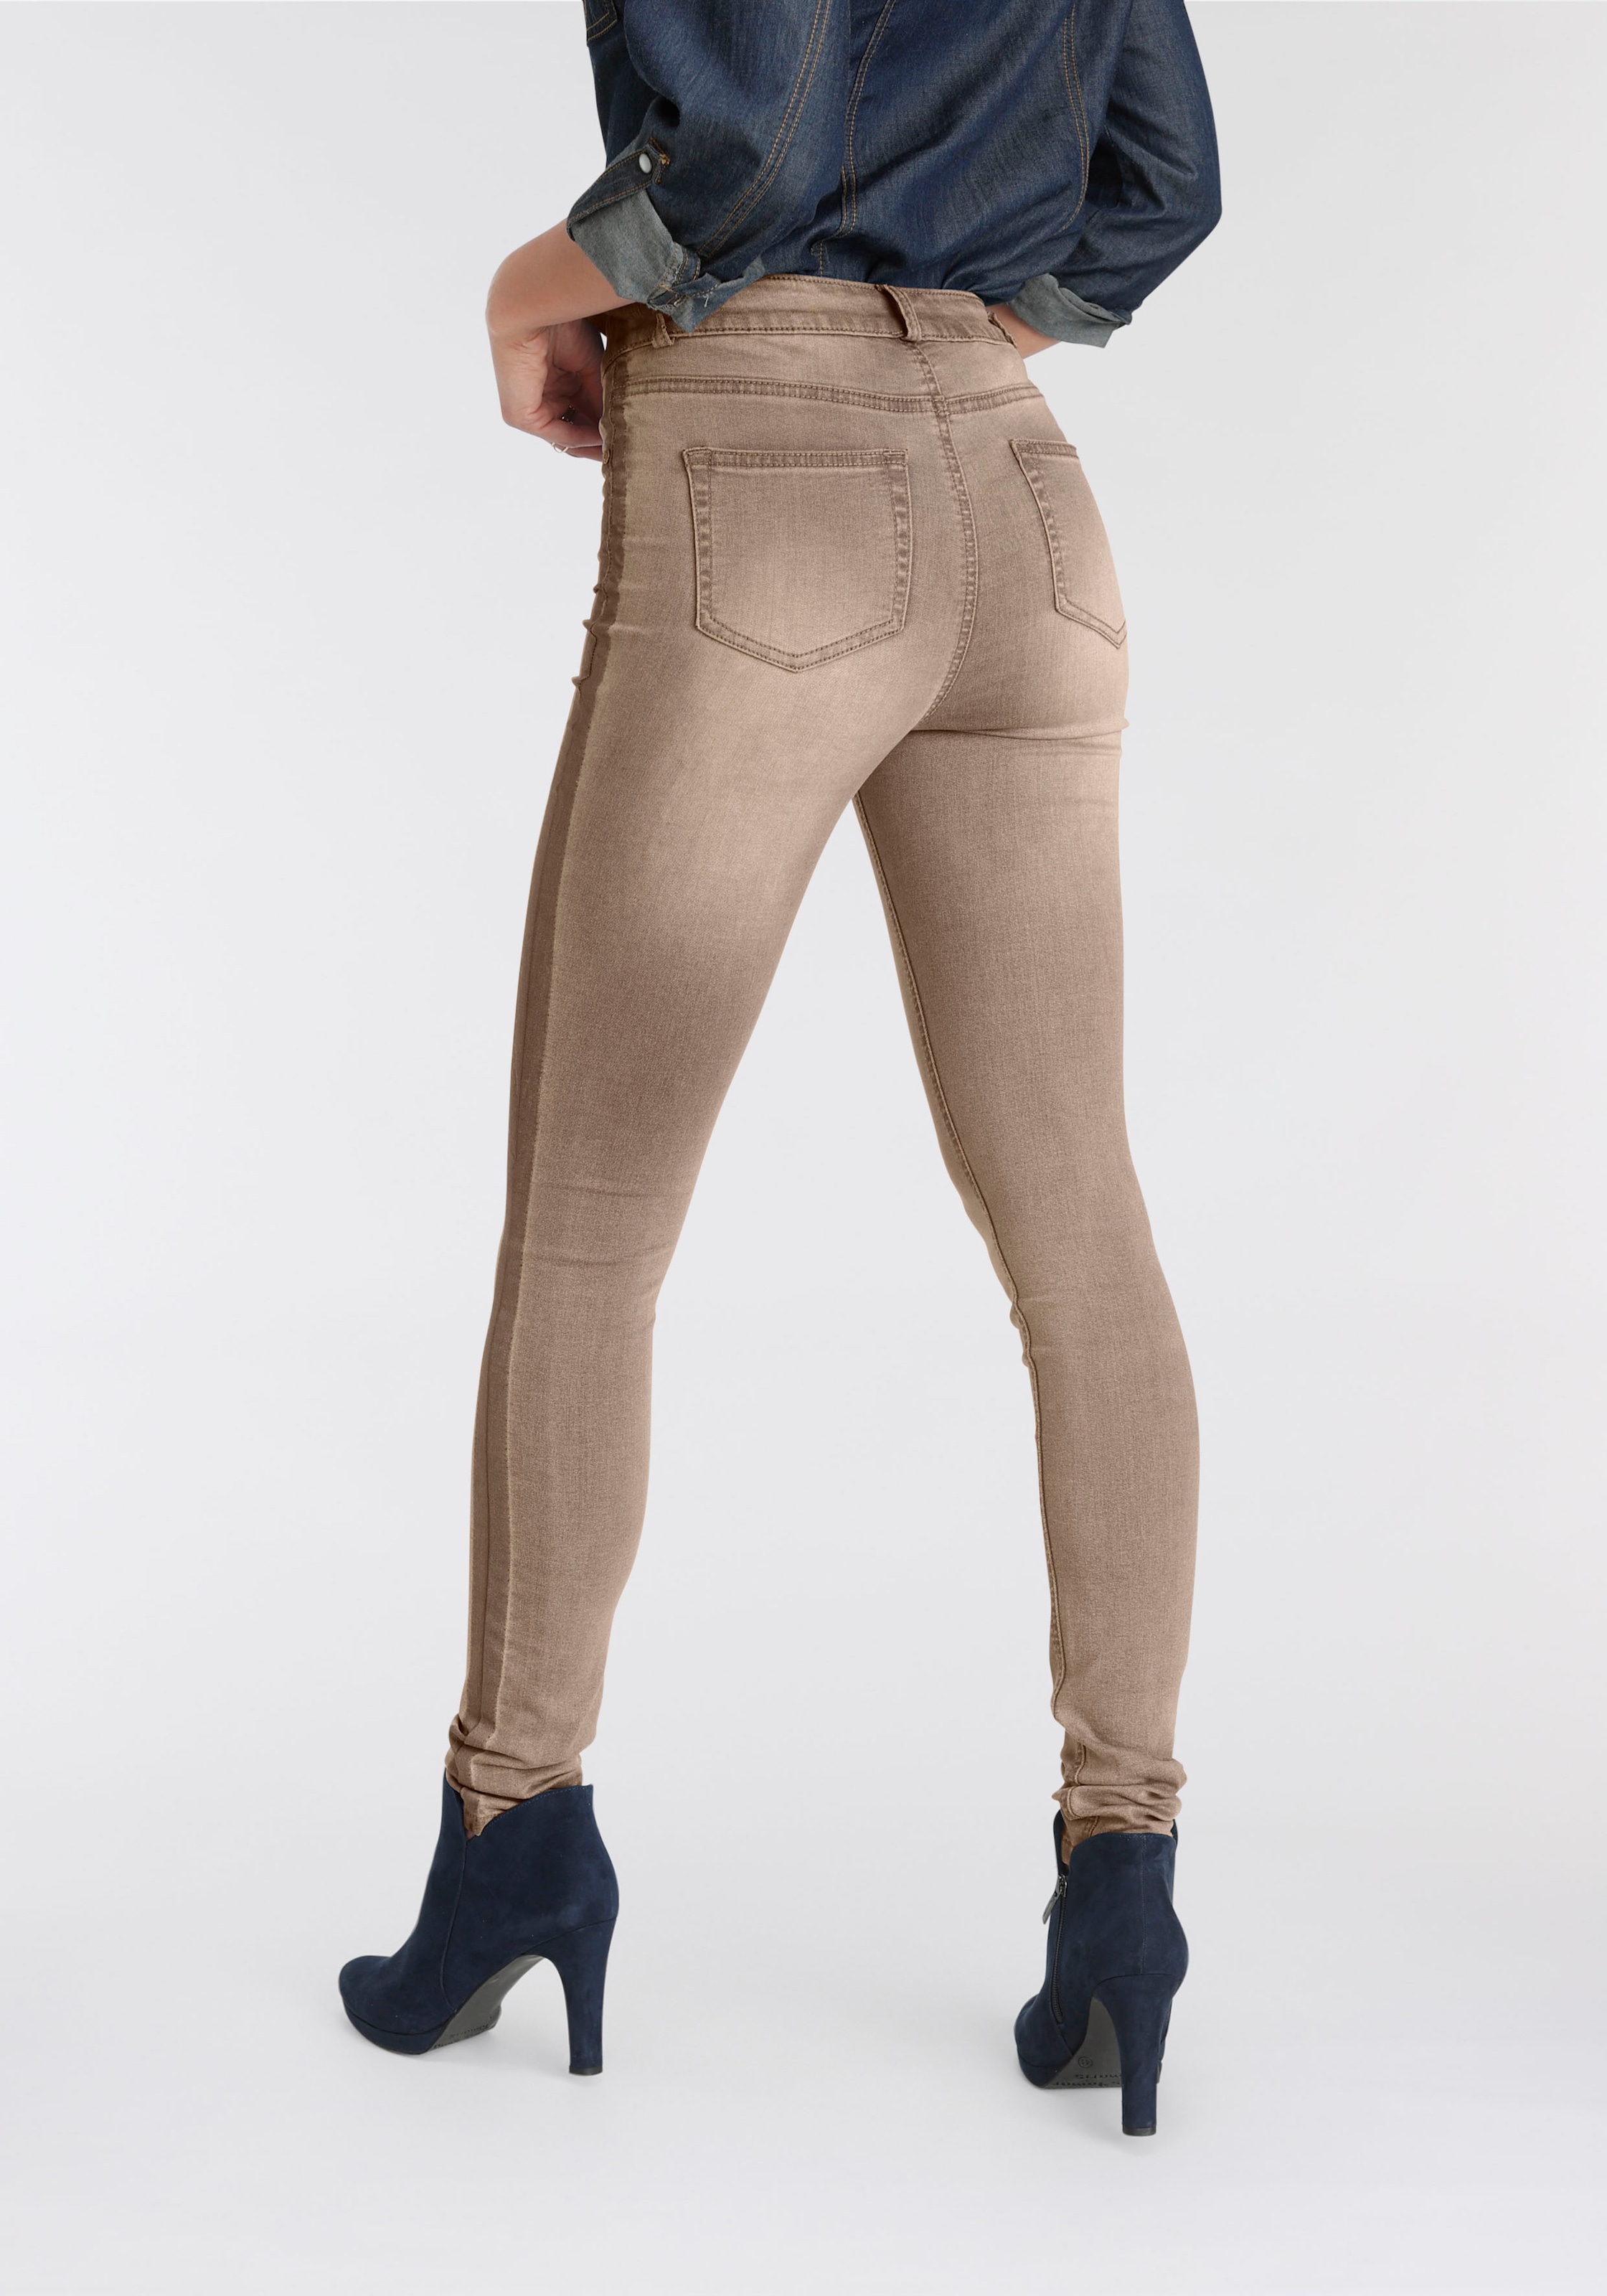 Waist »Ultra kaufen mit im Stretch«, Online-Shop High Skinny-fit-Jeans seitlichem Arizona Streifen